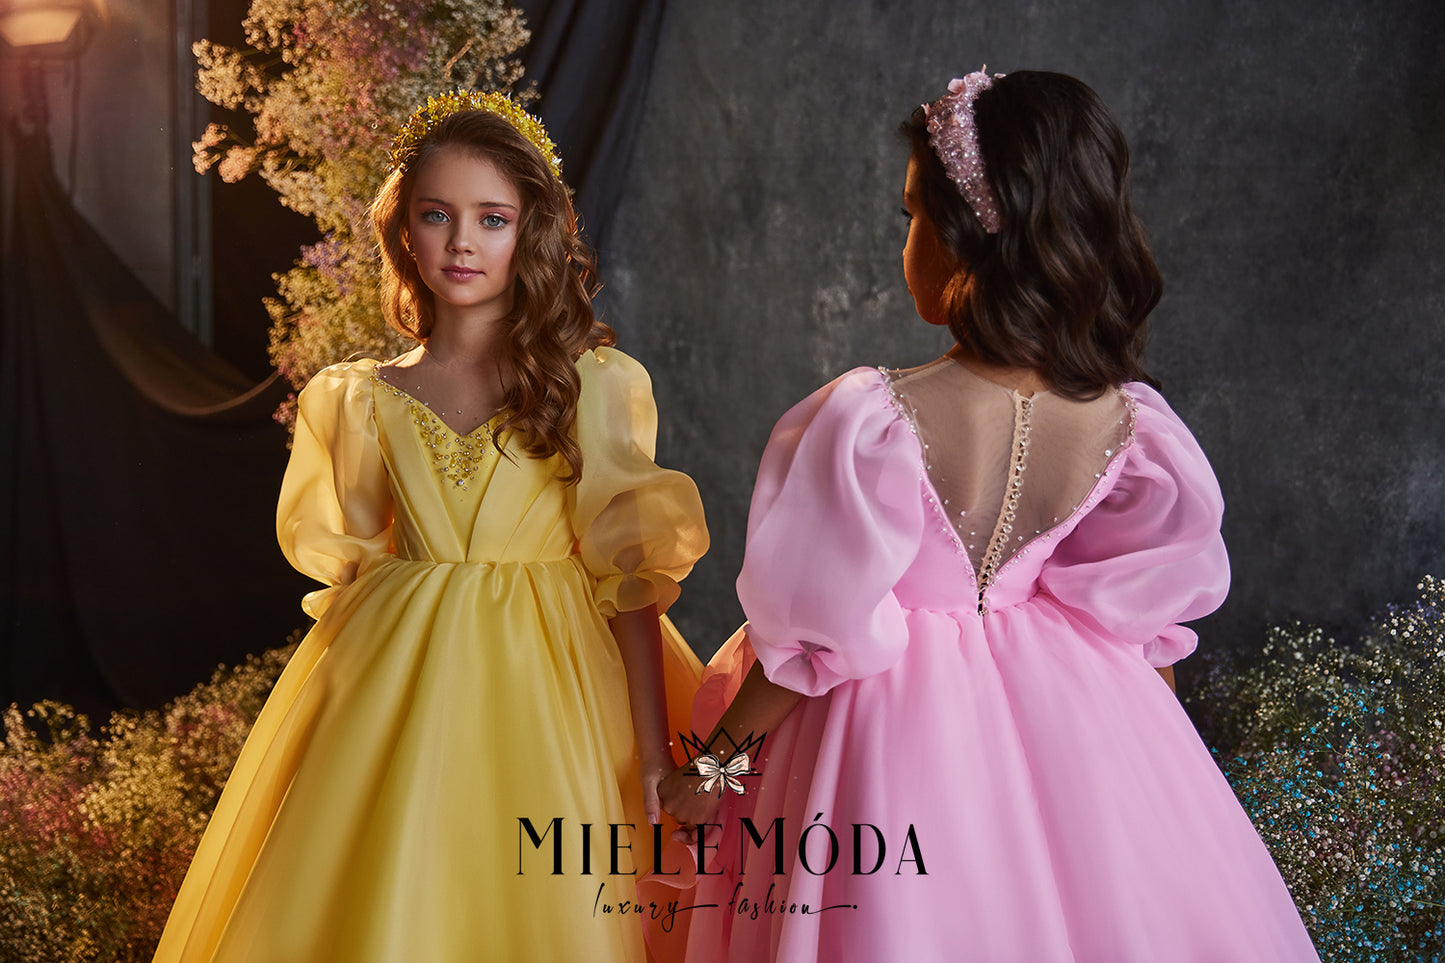 Viviana Luxury Baby Doll Princess Dress